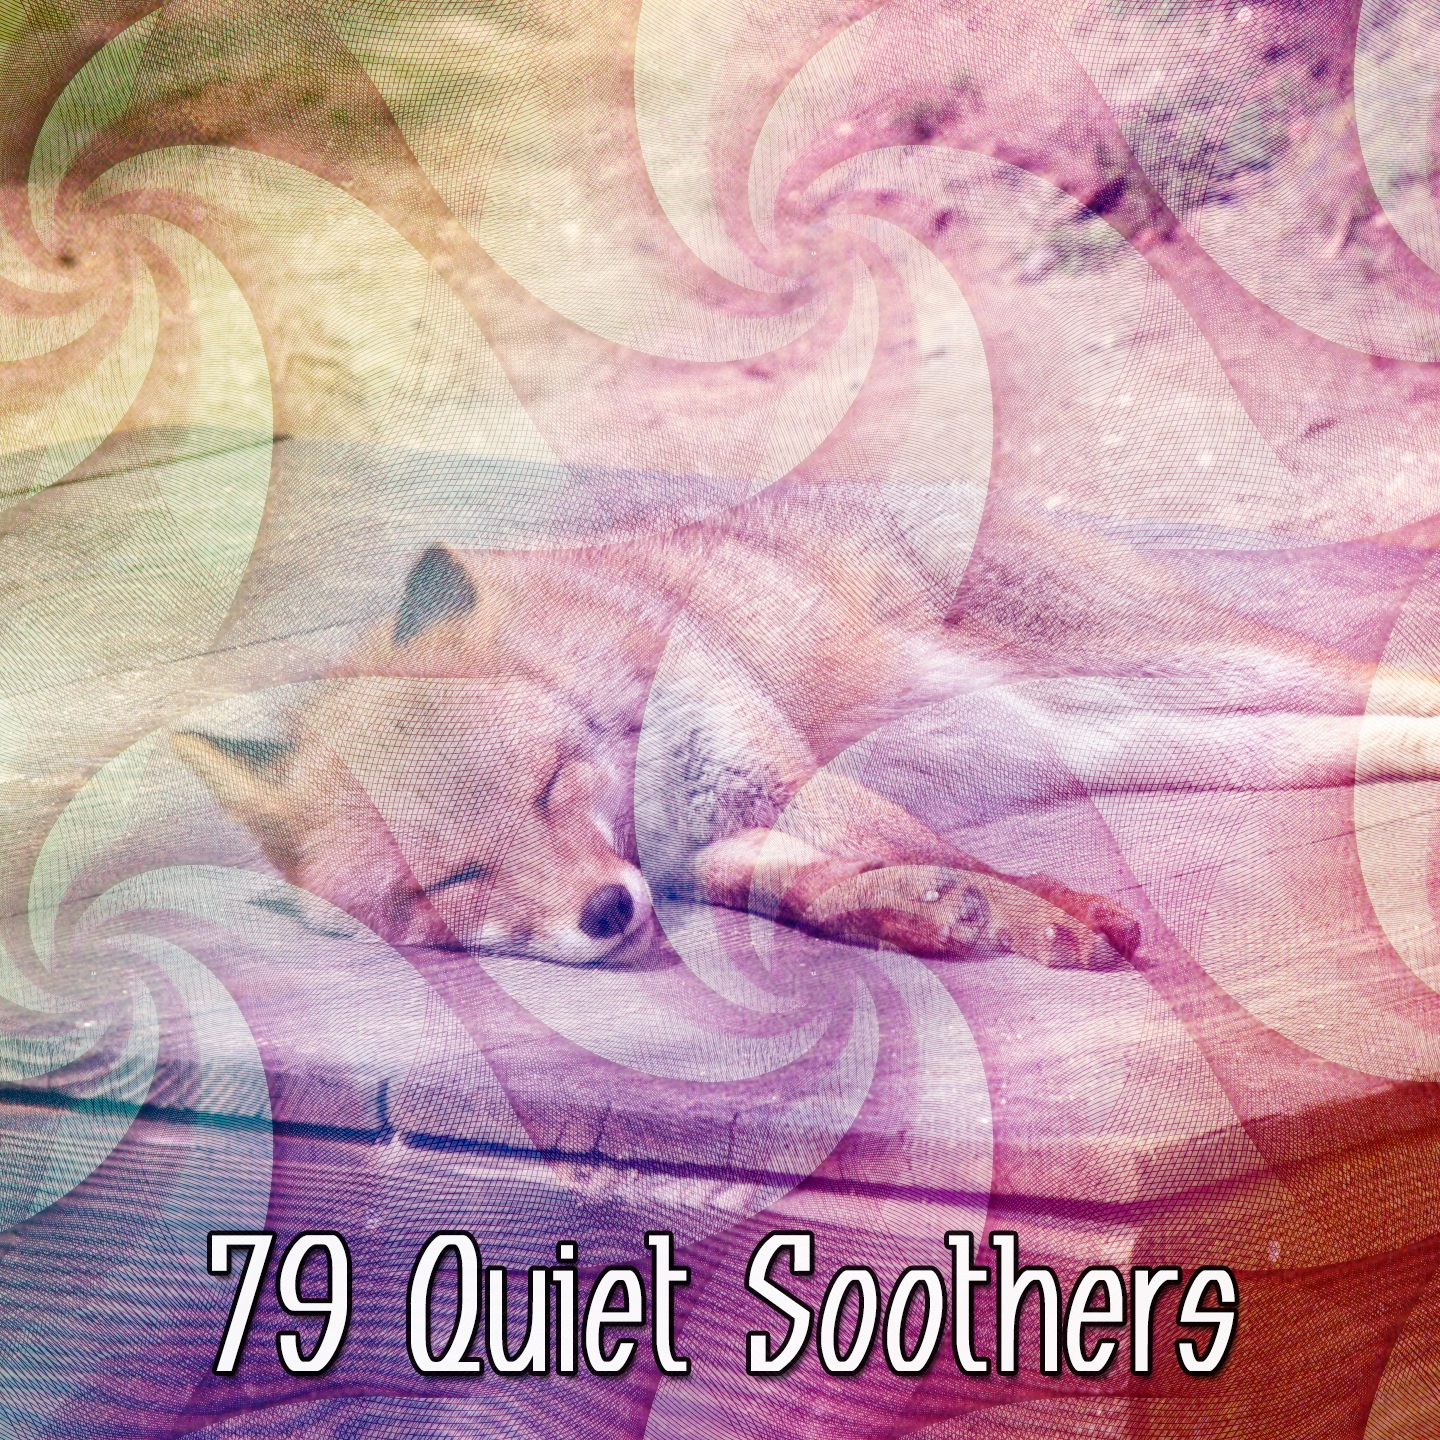 79 Quiet Soothers